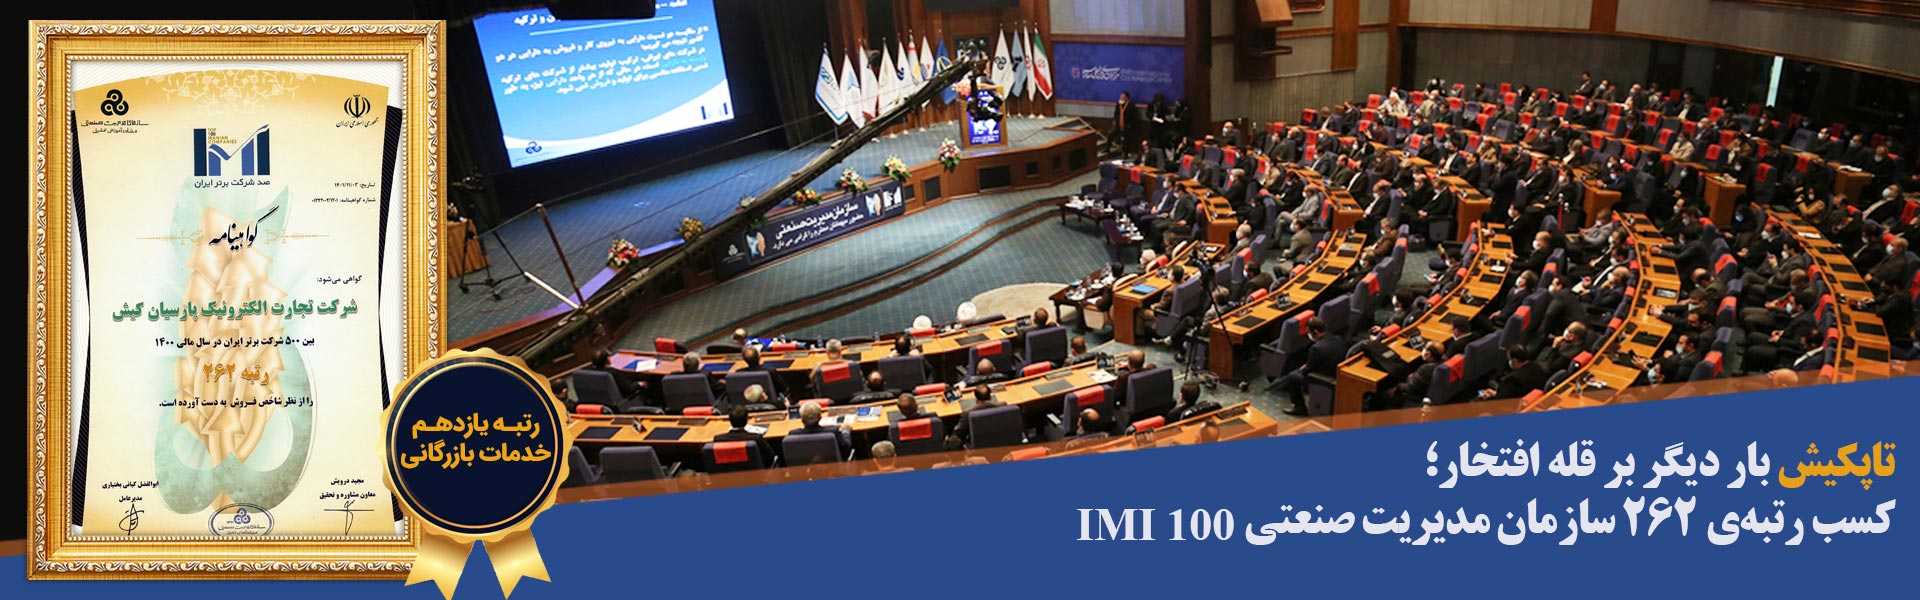 کسب رتبهی 262 سازمان مدیریت صنعتی IMI 100